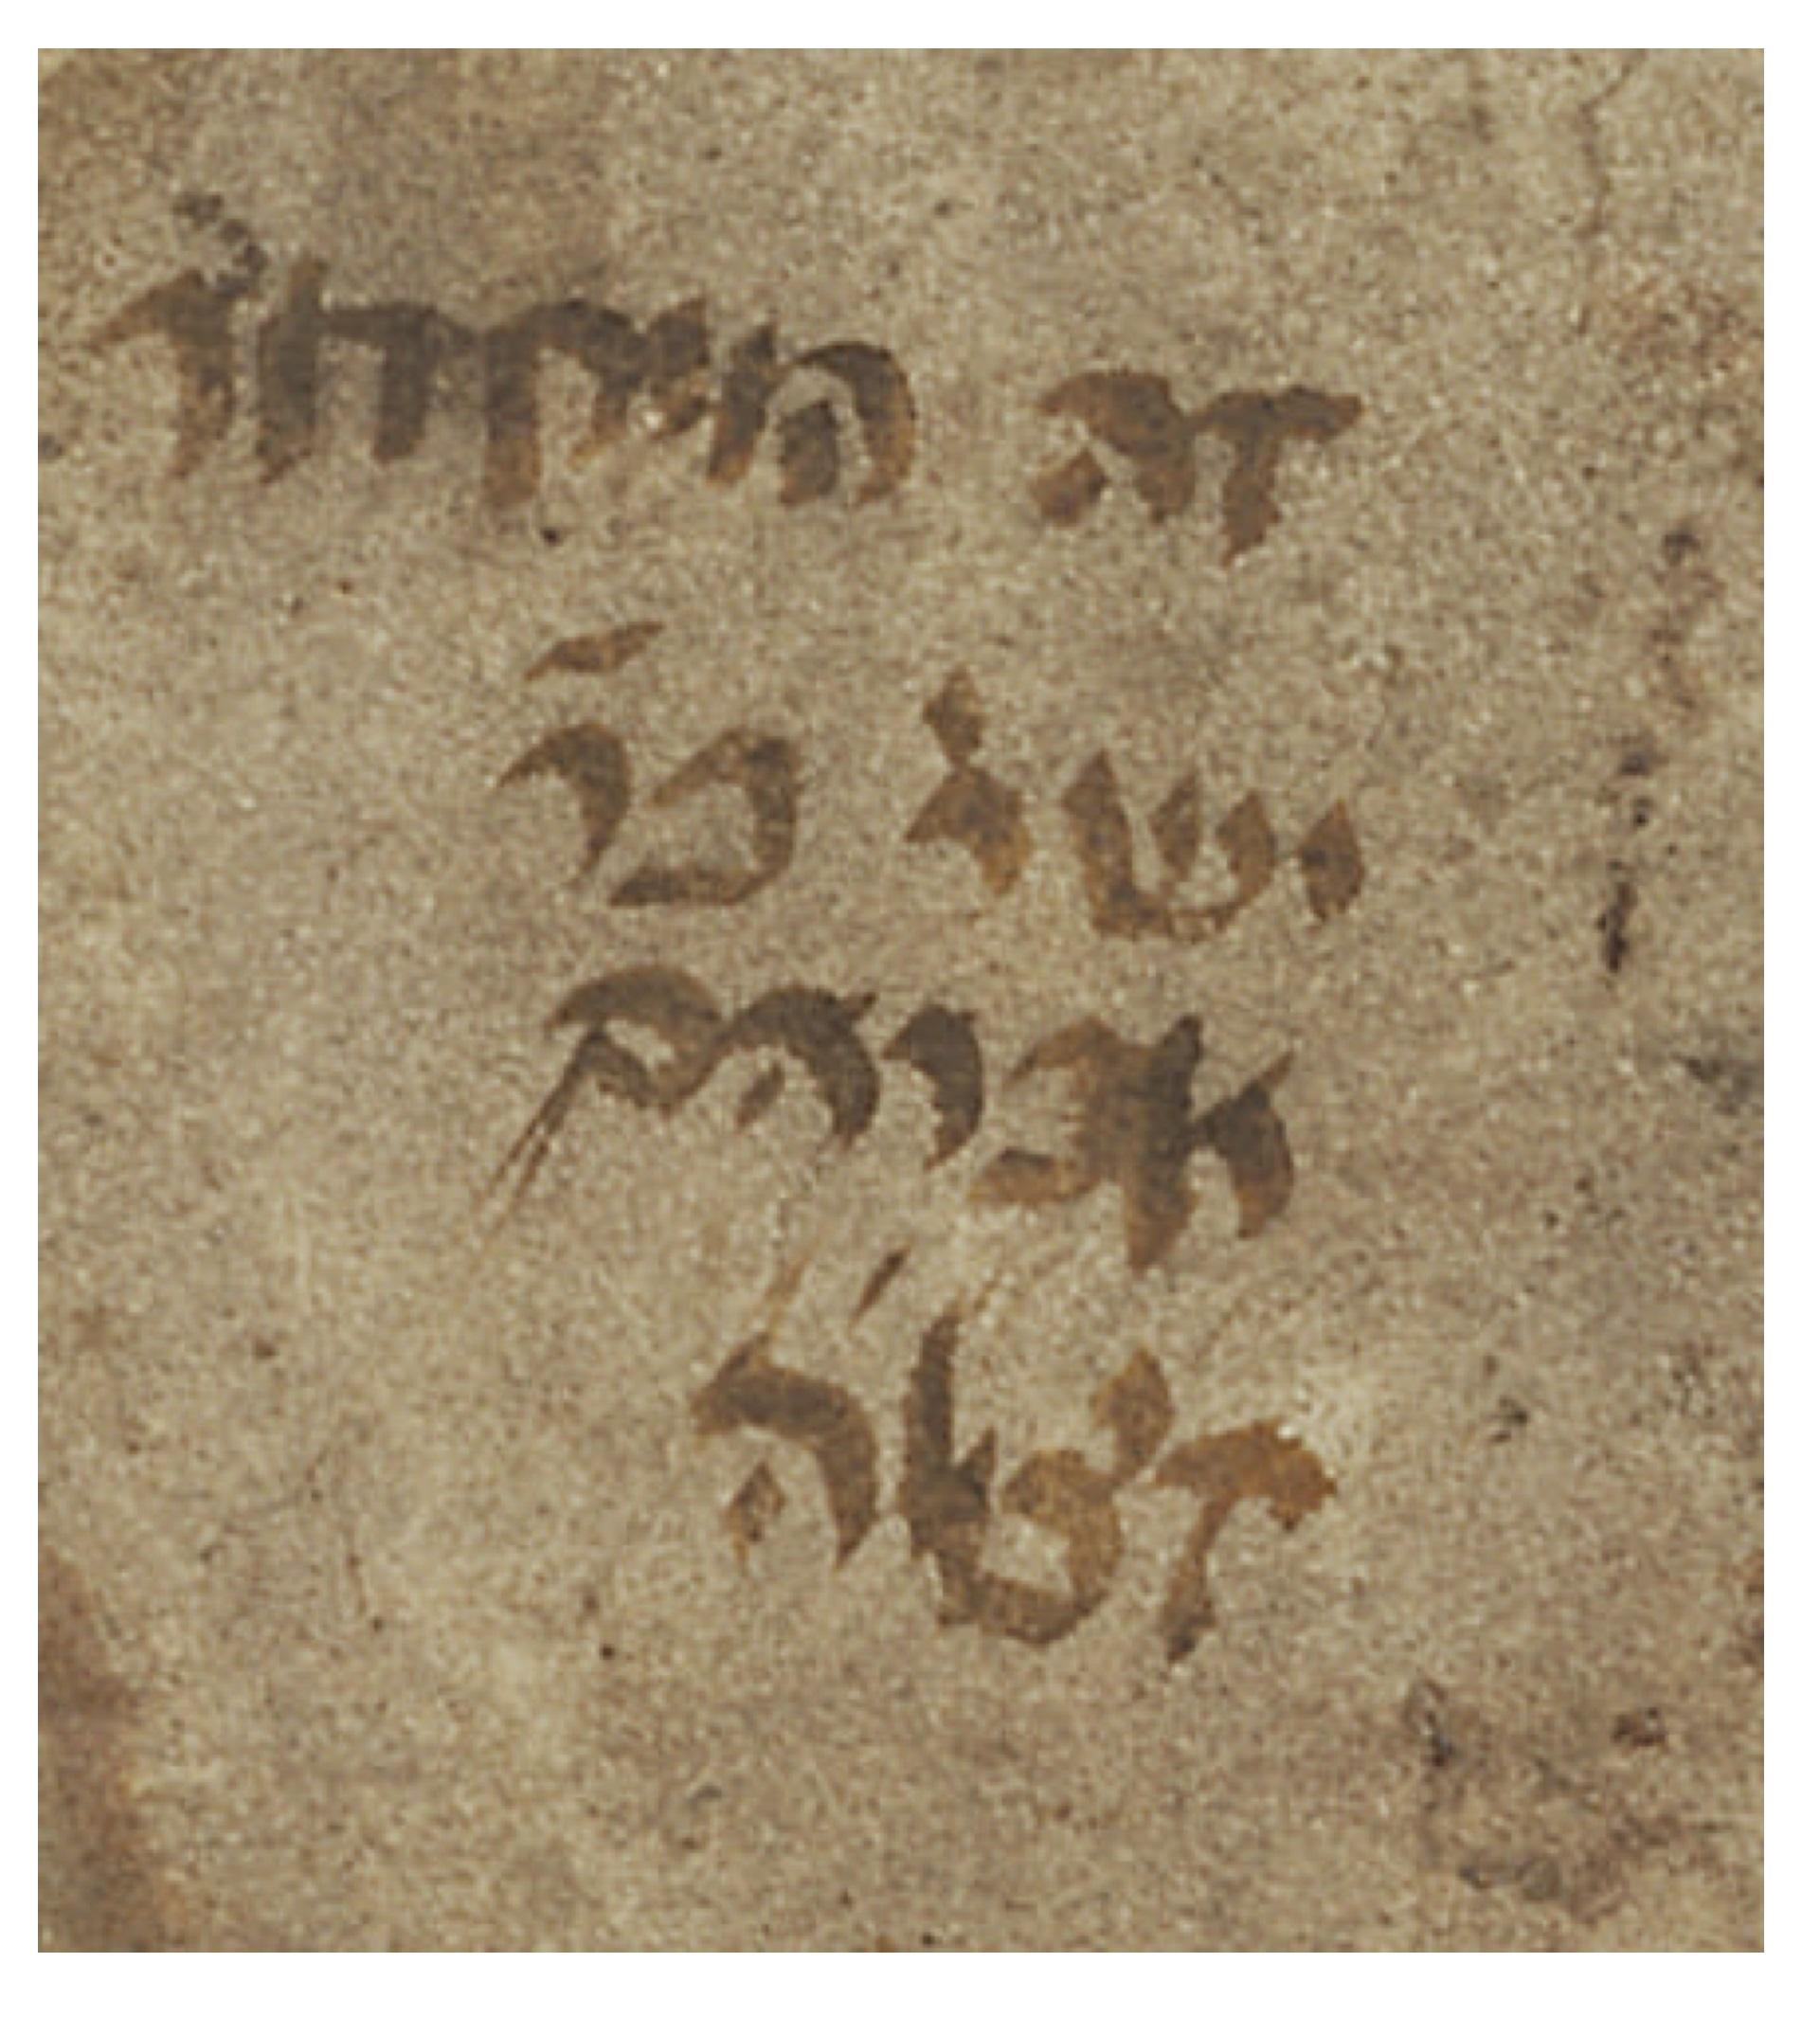 Ms. or. fol. 1224, "זה המחזור ישר' ב'ר' אברהם ז'צ'ל'ה"